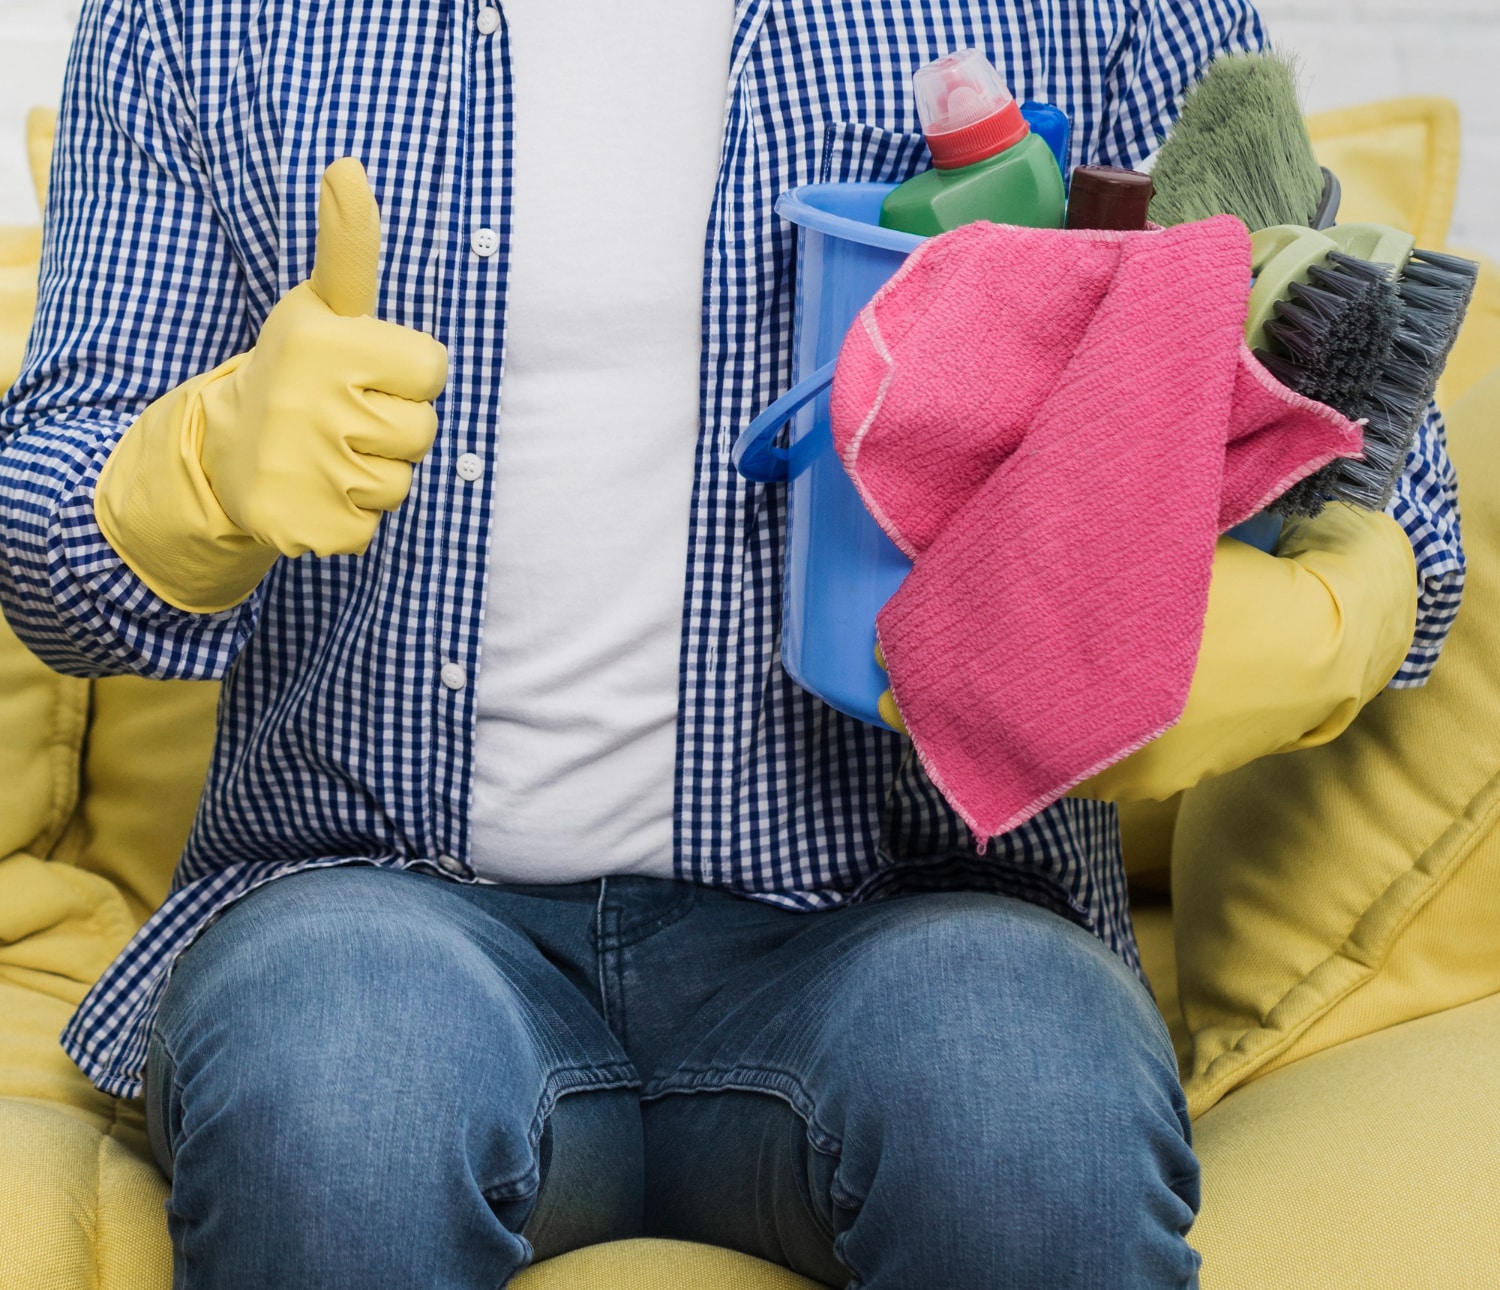 Homme assis sur un canapé jaune, tenant un seau rempli d'articles de nettoyage, faisant un pouce levé.